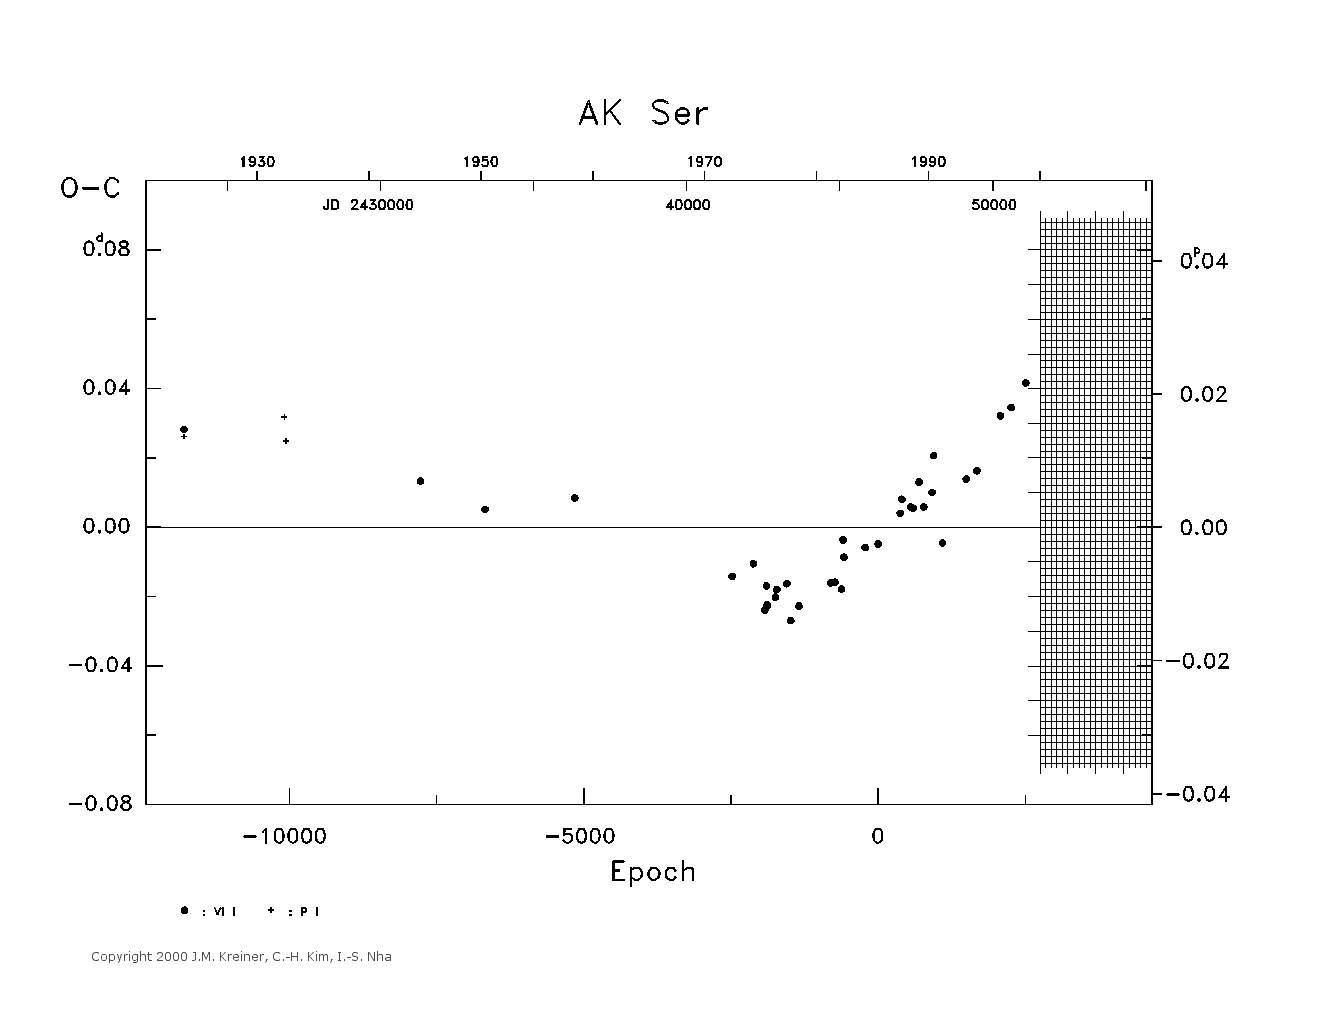 [IMAGE: large AK SER O-C diagram]